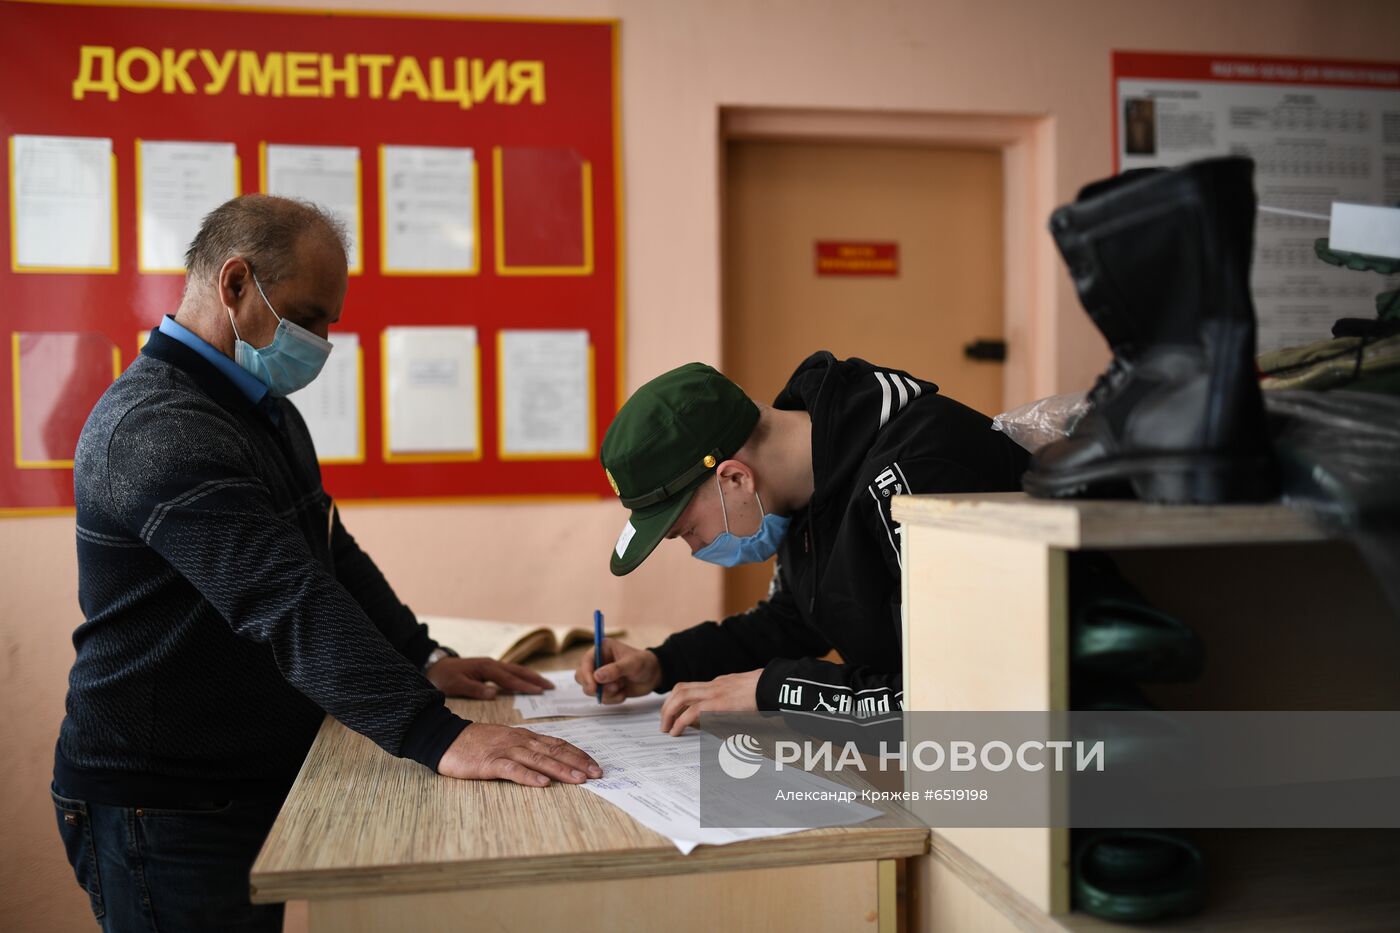 Подготовка к отправке призывников со сборного пункта в Новосибирской области